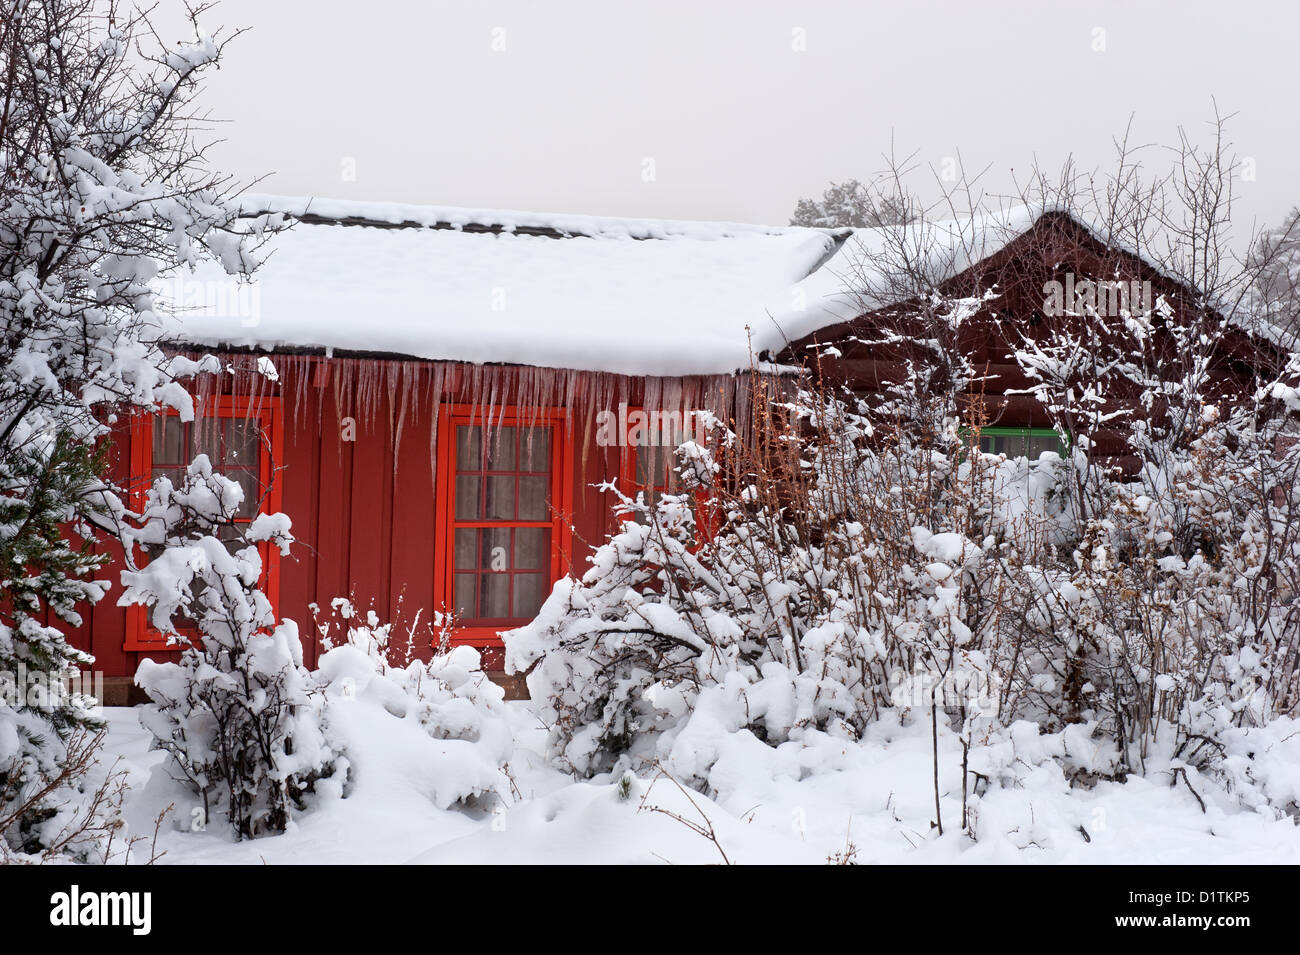 Ein rotes eingebettet gefrorenen Hütte im Wald in einer verschneiten Landschaft mit Eis Zyklen hängen vom Dach. Stockfoto